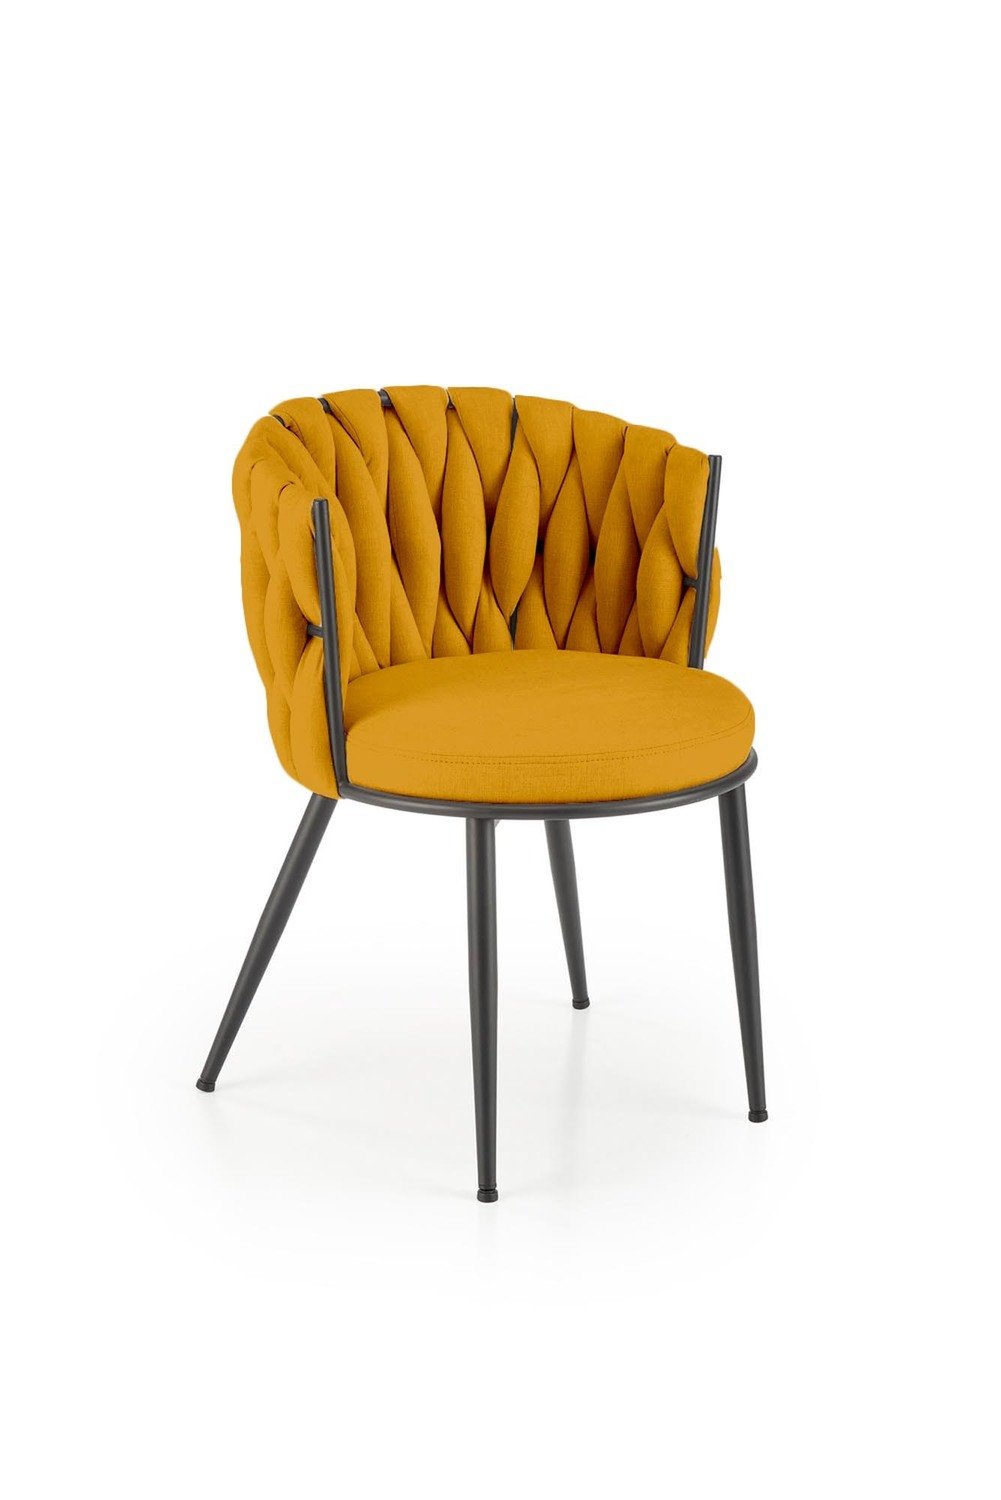 2-ių kėdžių komplektas K516, geltona